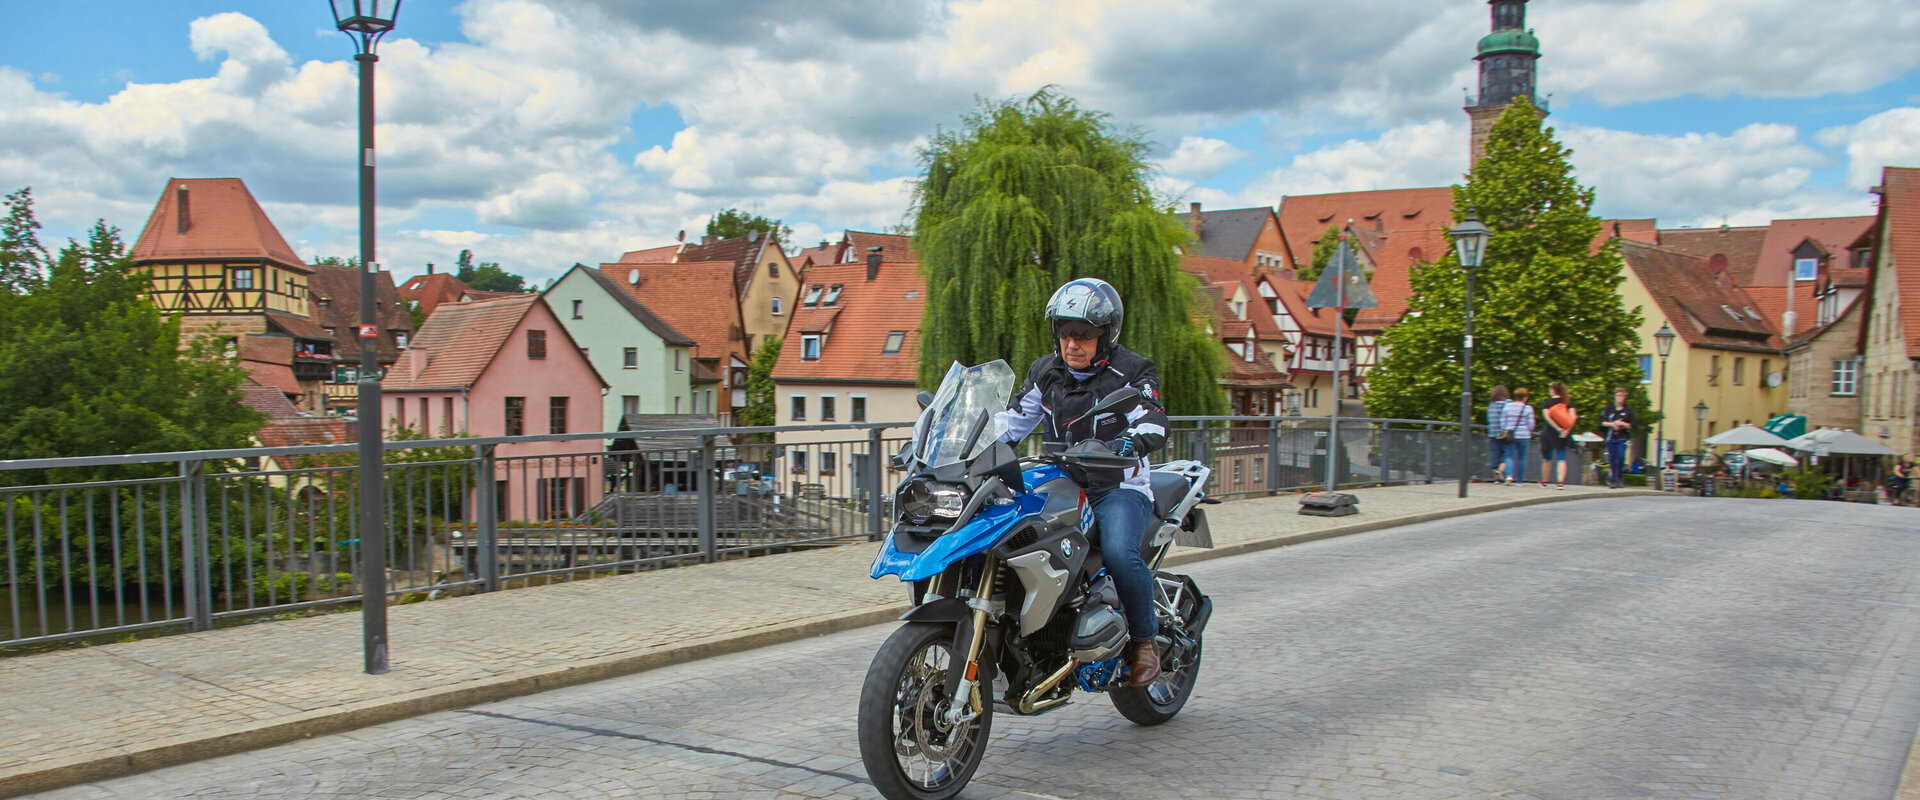 Mit dem Motorrad durch die Laufer Altstadt